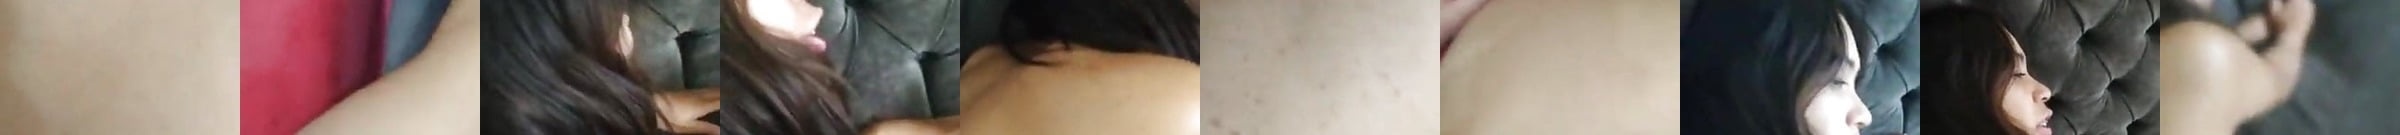 Vidéos Porno Glory Hole Durée En Vedette Xhamster